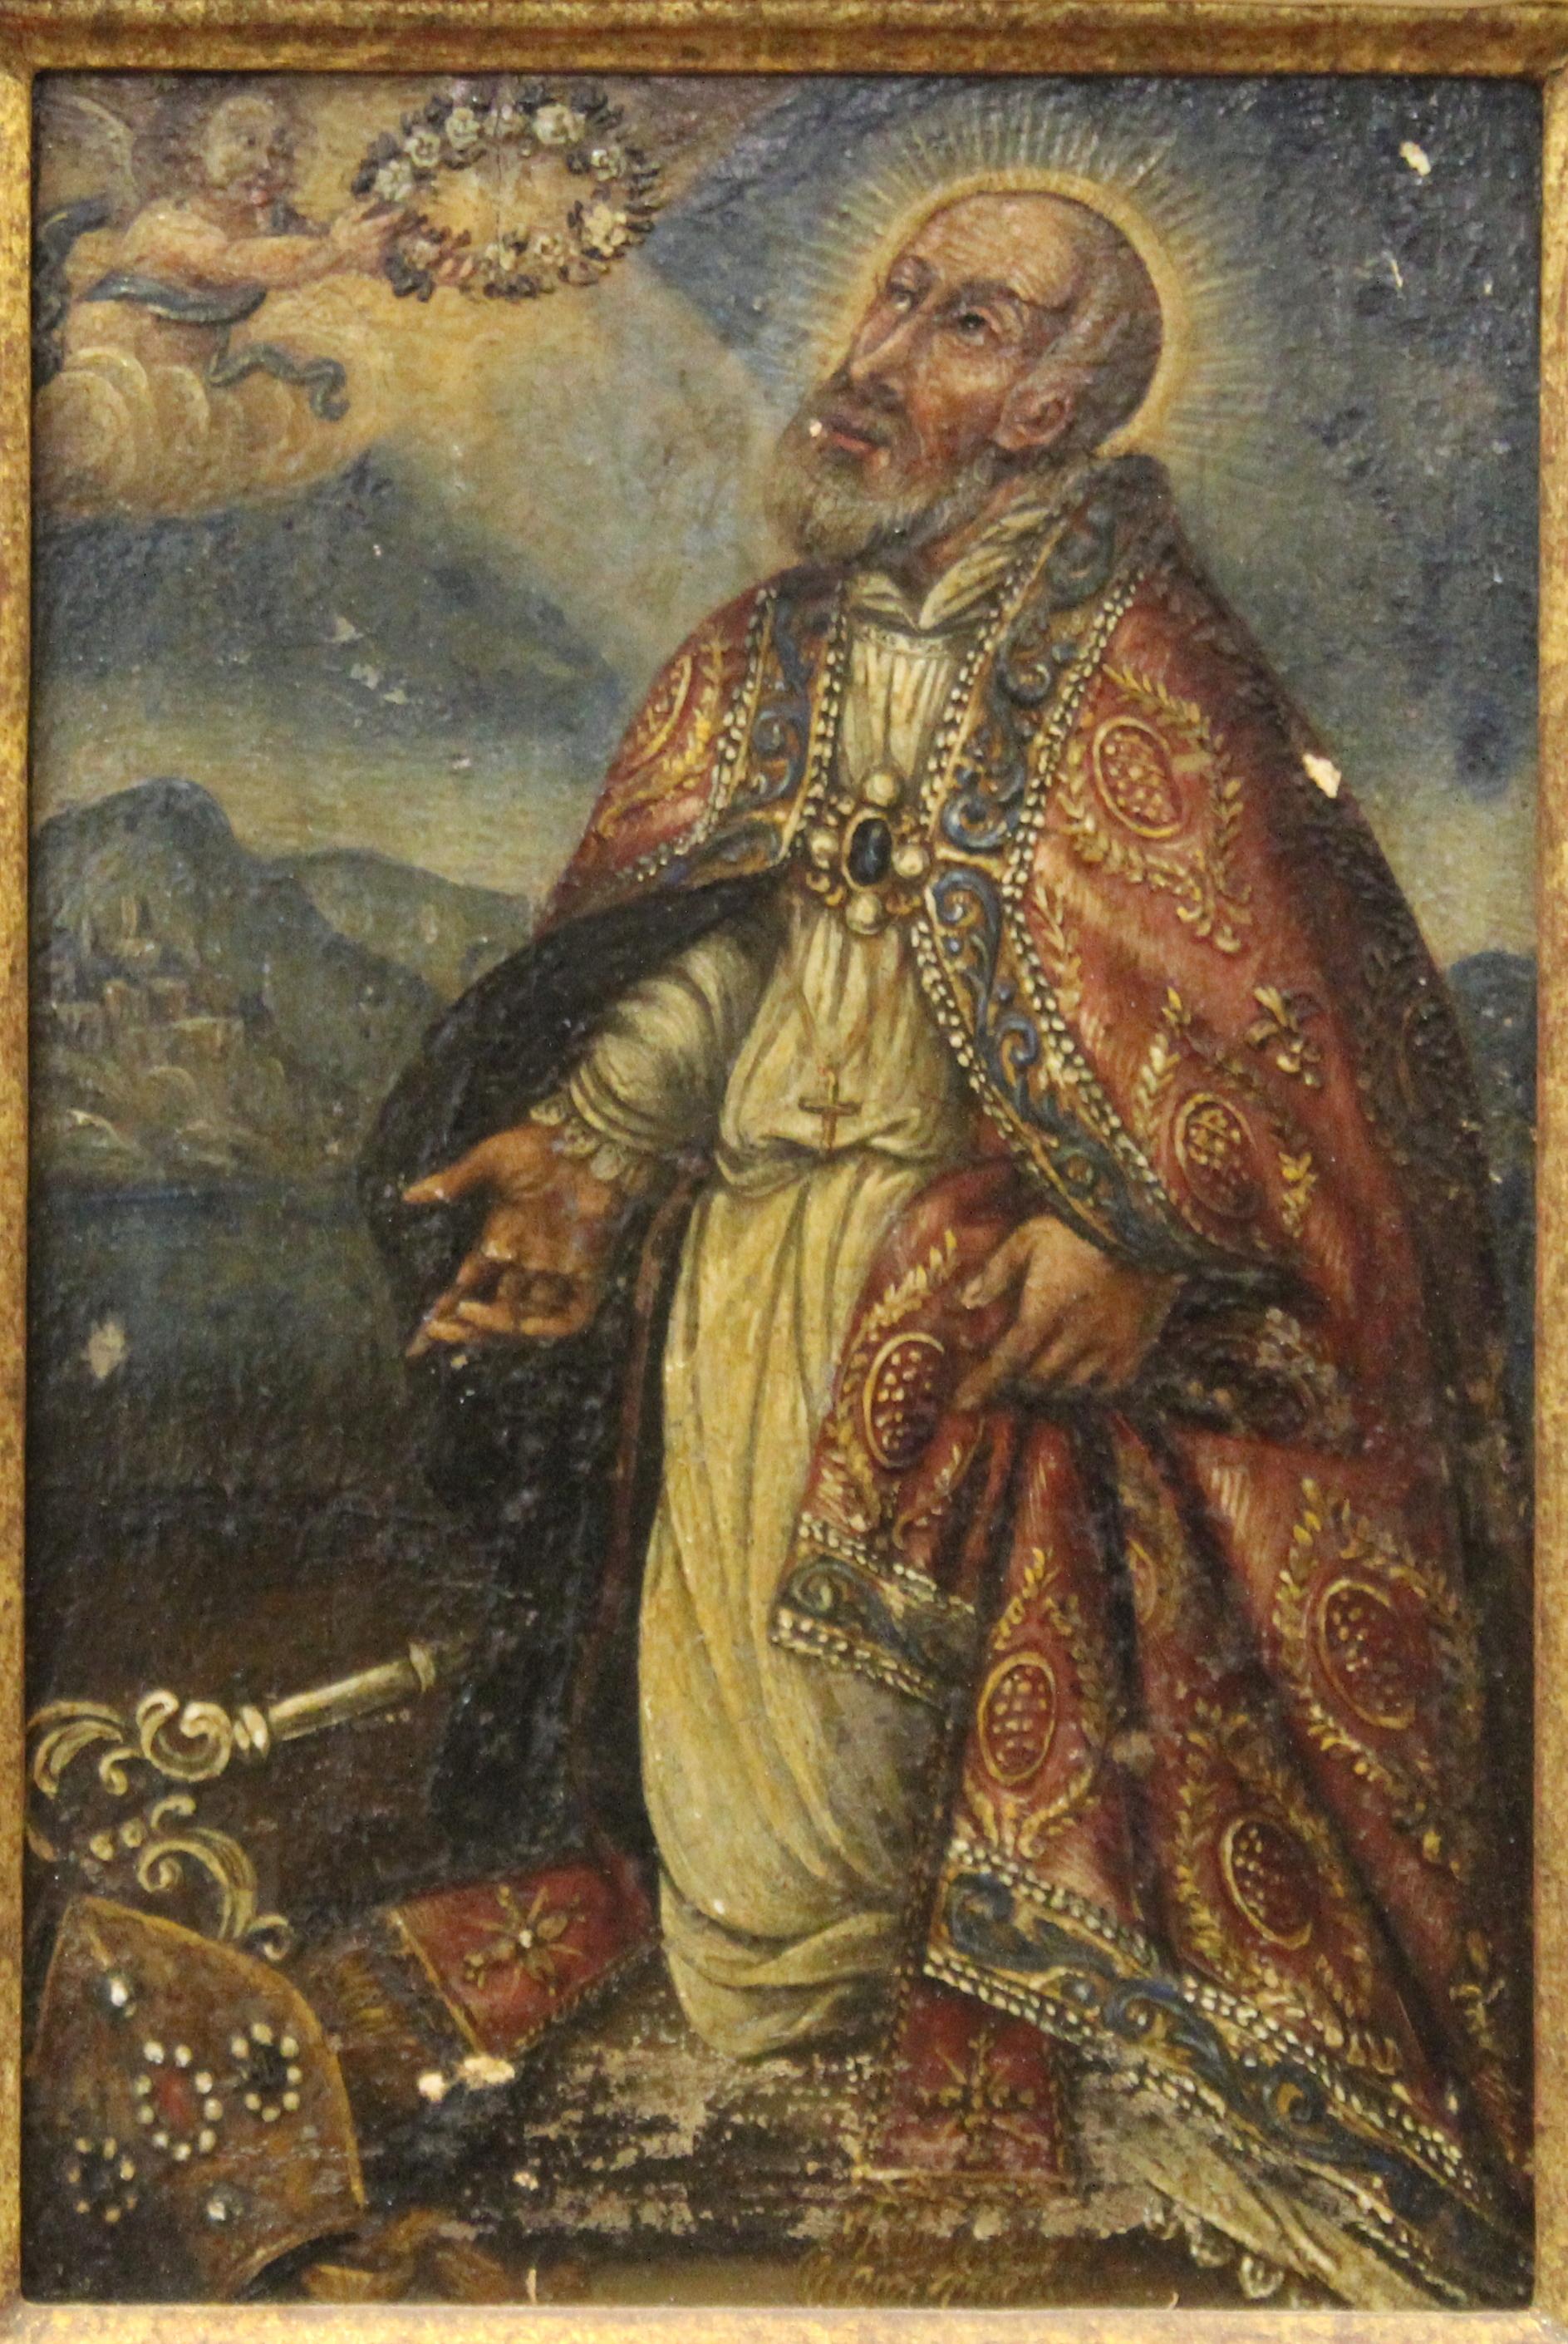 Spanisches Ölgemälde aus der Kolonialzeit, das einen knienden Heiligen oder Bischof darstellt, der von einem Engel in der linken oberen Ecke mit einem Blumenkranz geschmückt wird. Das Stück ist in einem Kulicke-Vergoldungsrahmen